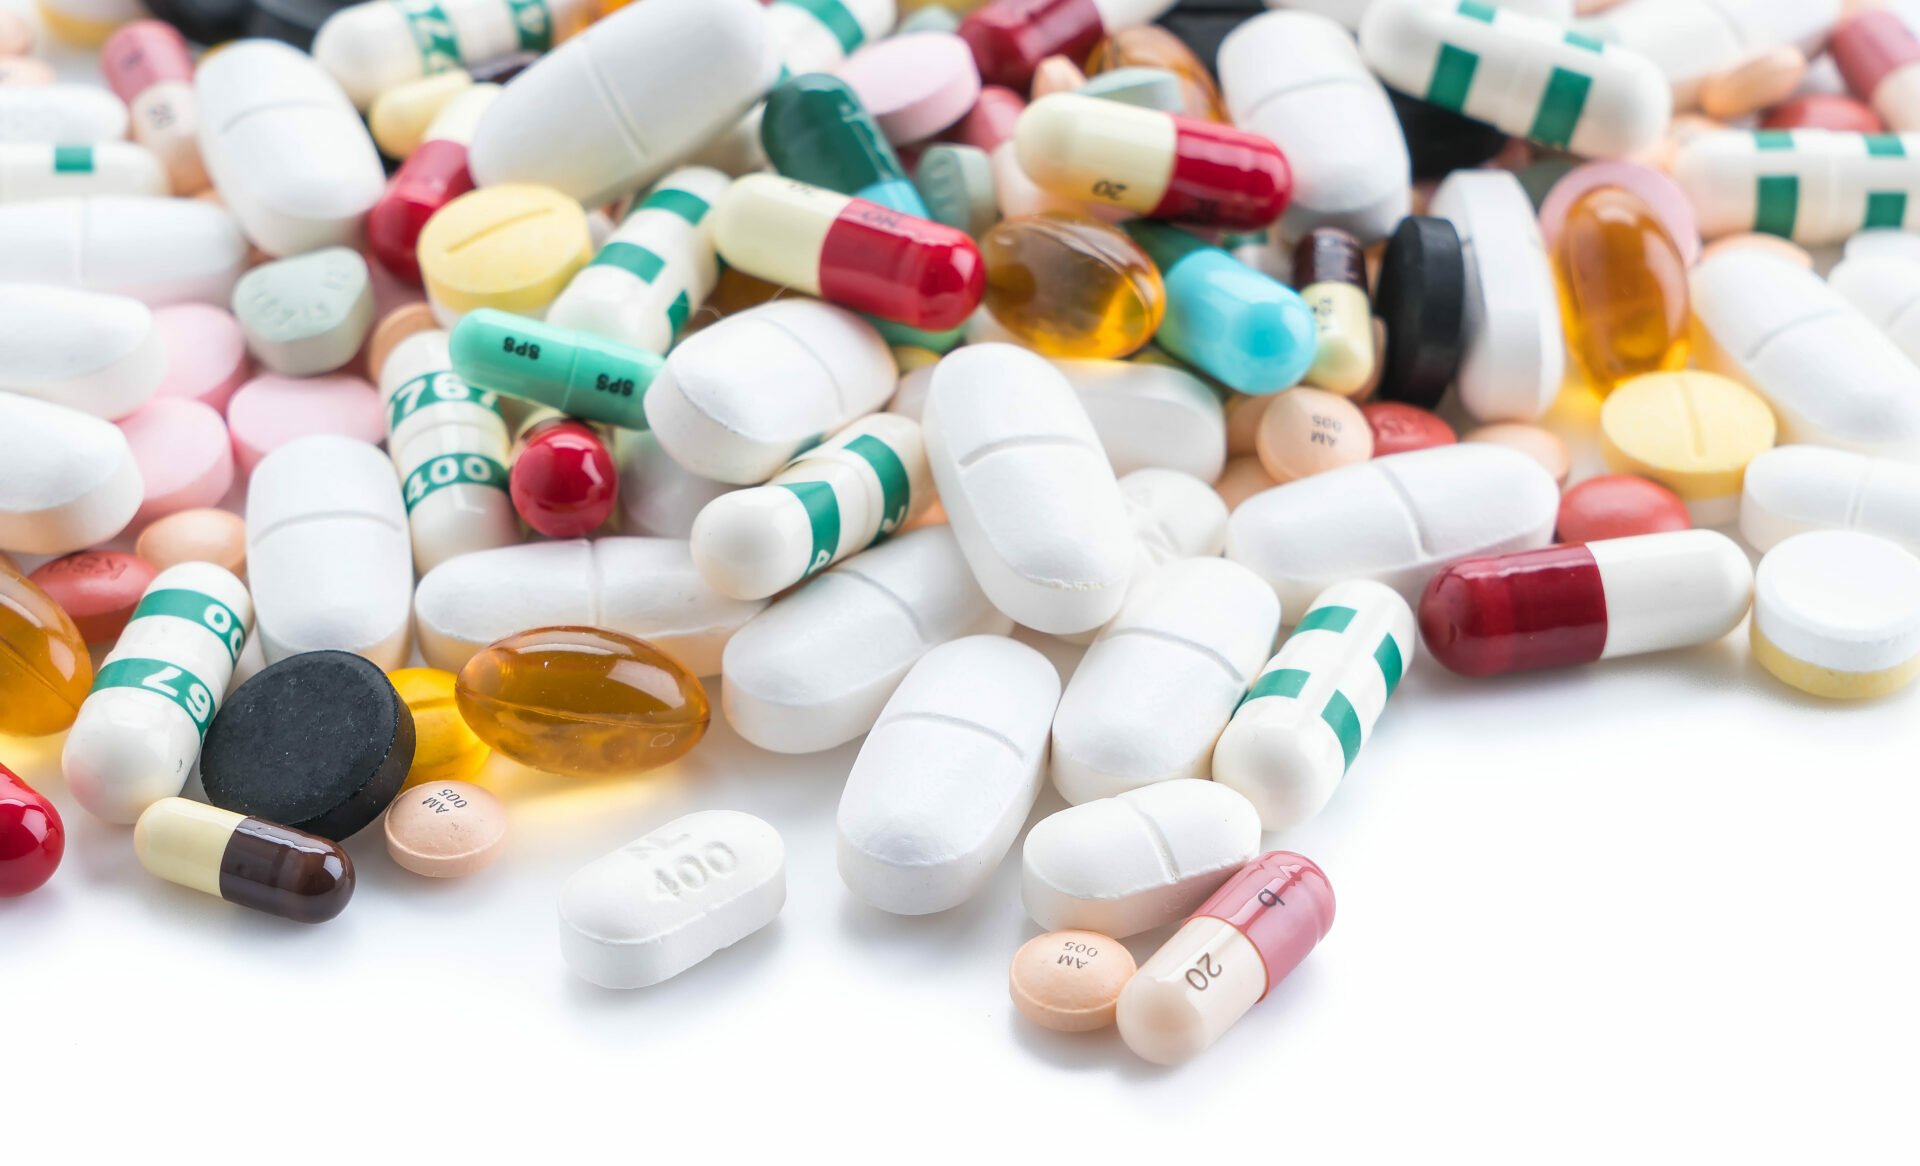 Štátny ústav pre kontrolu liečiv vyzbieral vlani 197 ton nespotrebovaných liekov